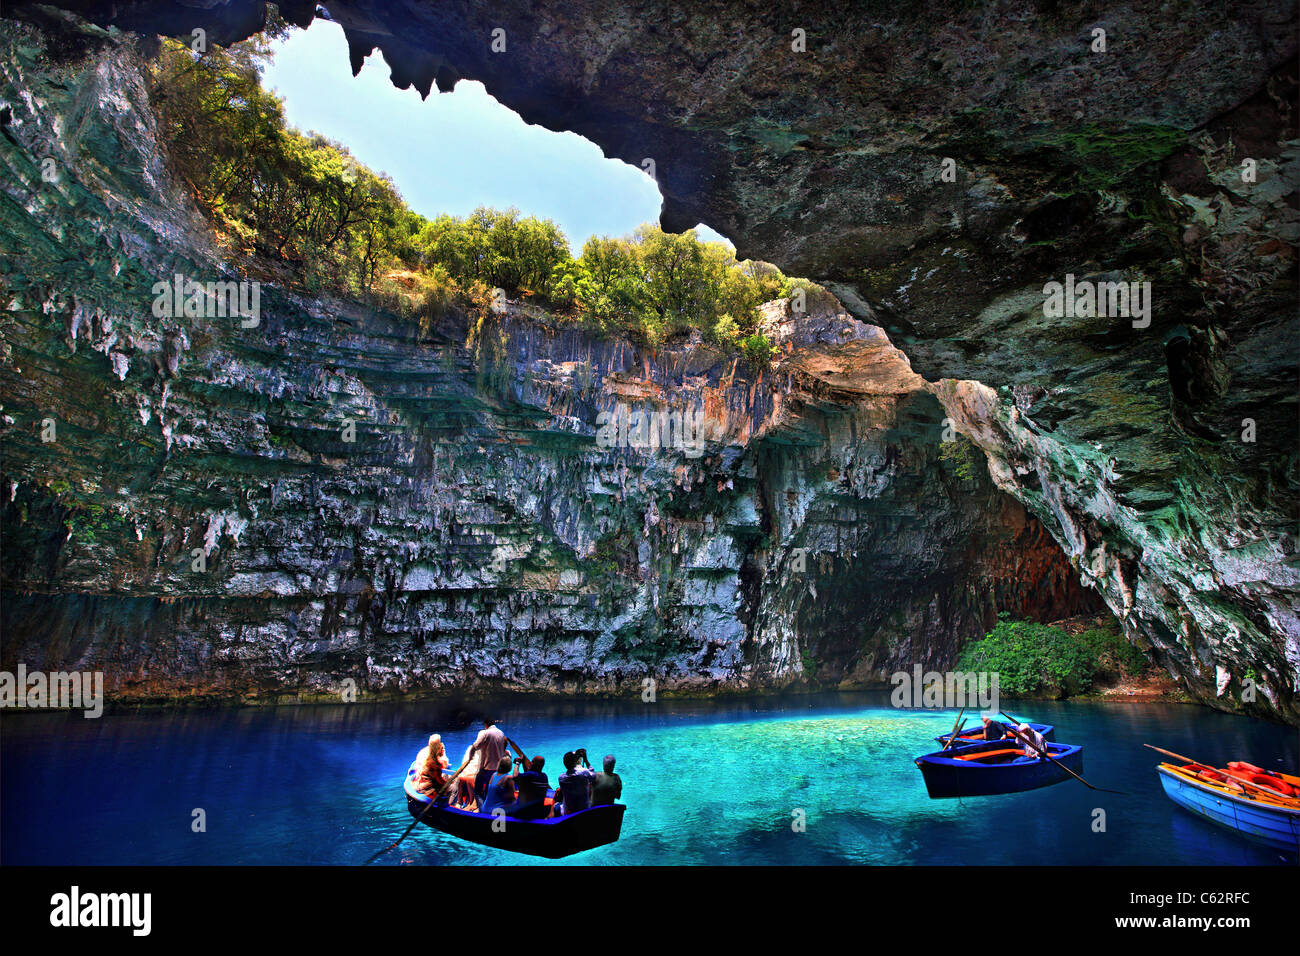 Bootsfahrt in "Höhle-See" von Melissani, auf der Insel Kefalonia, Ionische Meer, Griechenland Stockfoto